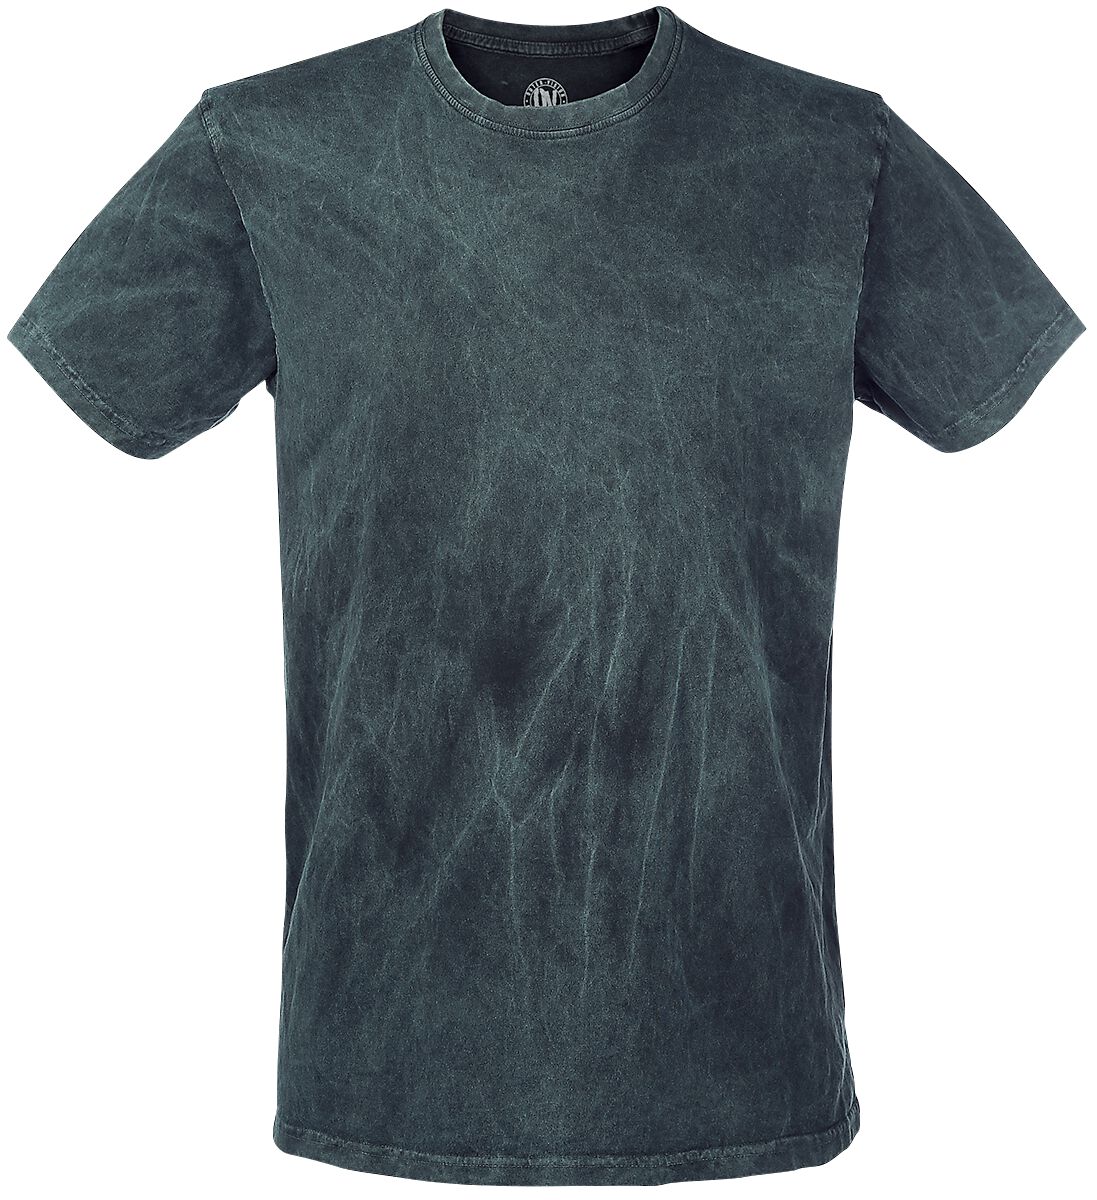 Outer Vision T-Shirt - Vintage - S bis XXL - für Männer - Größe XL - petrol